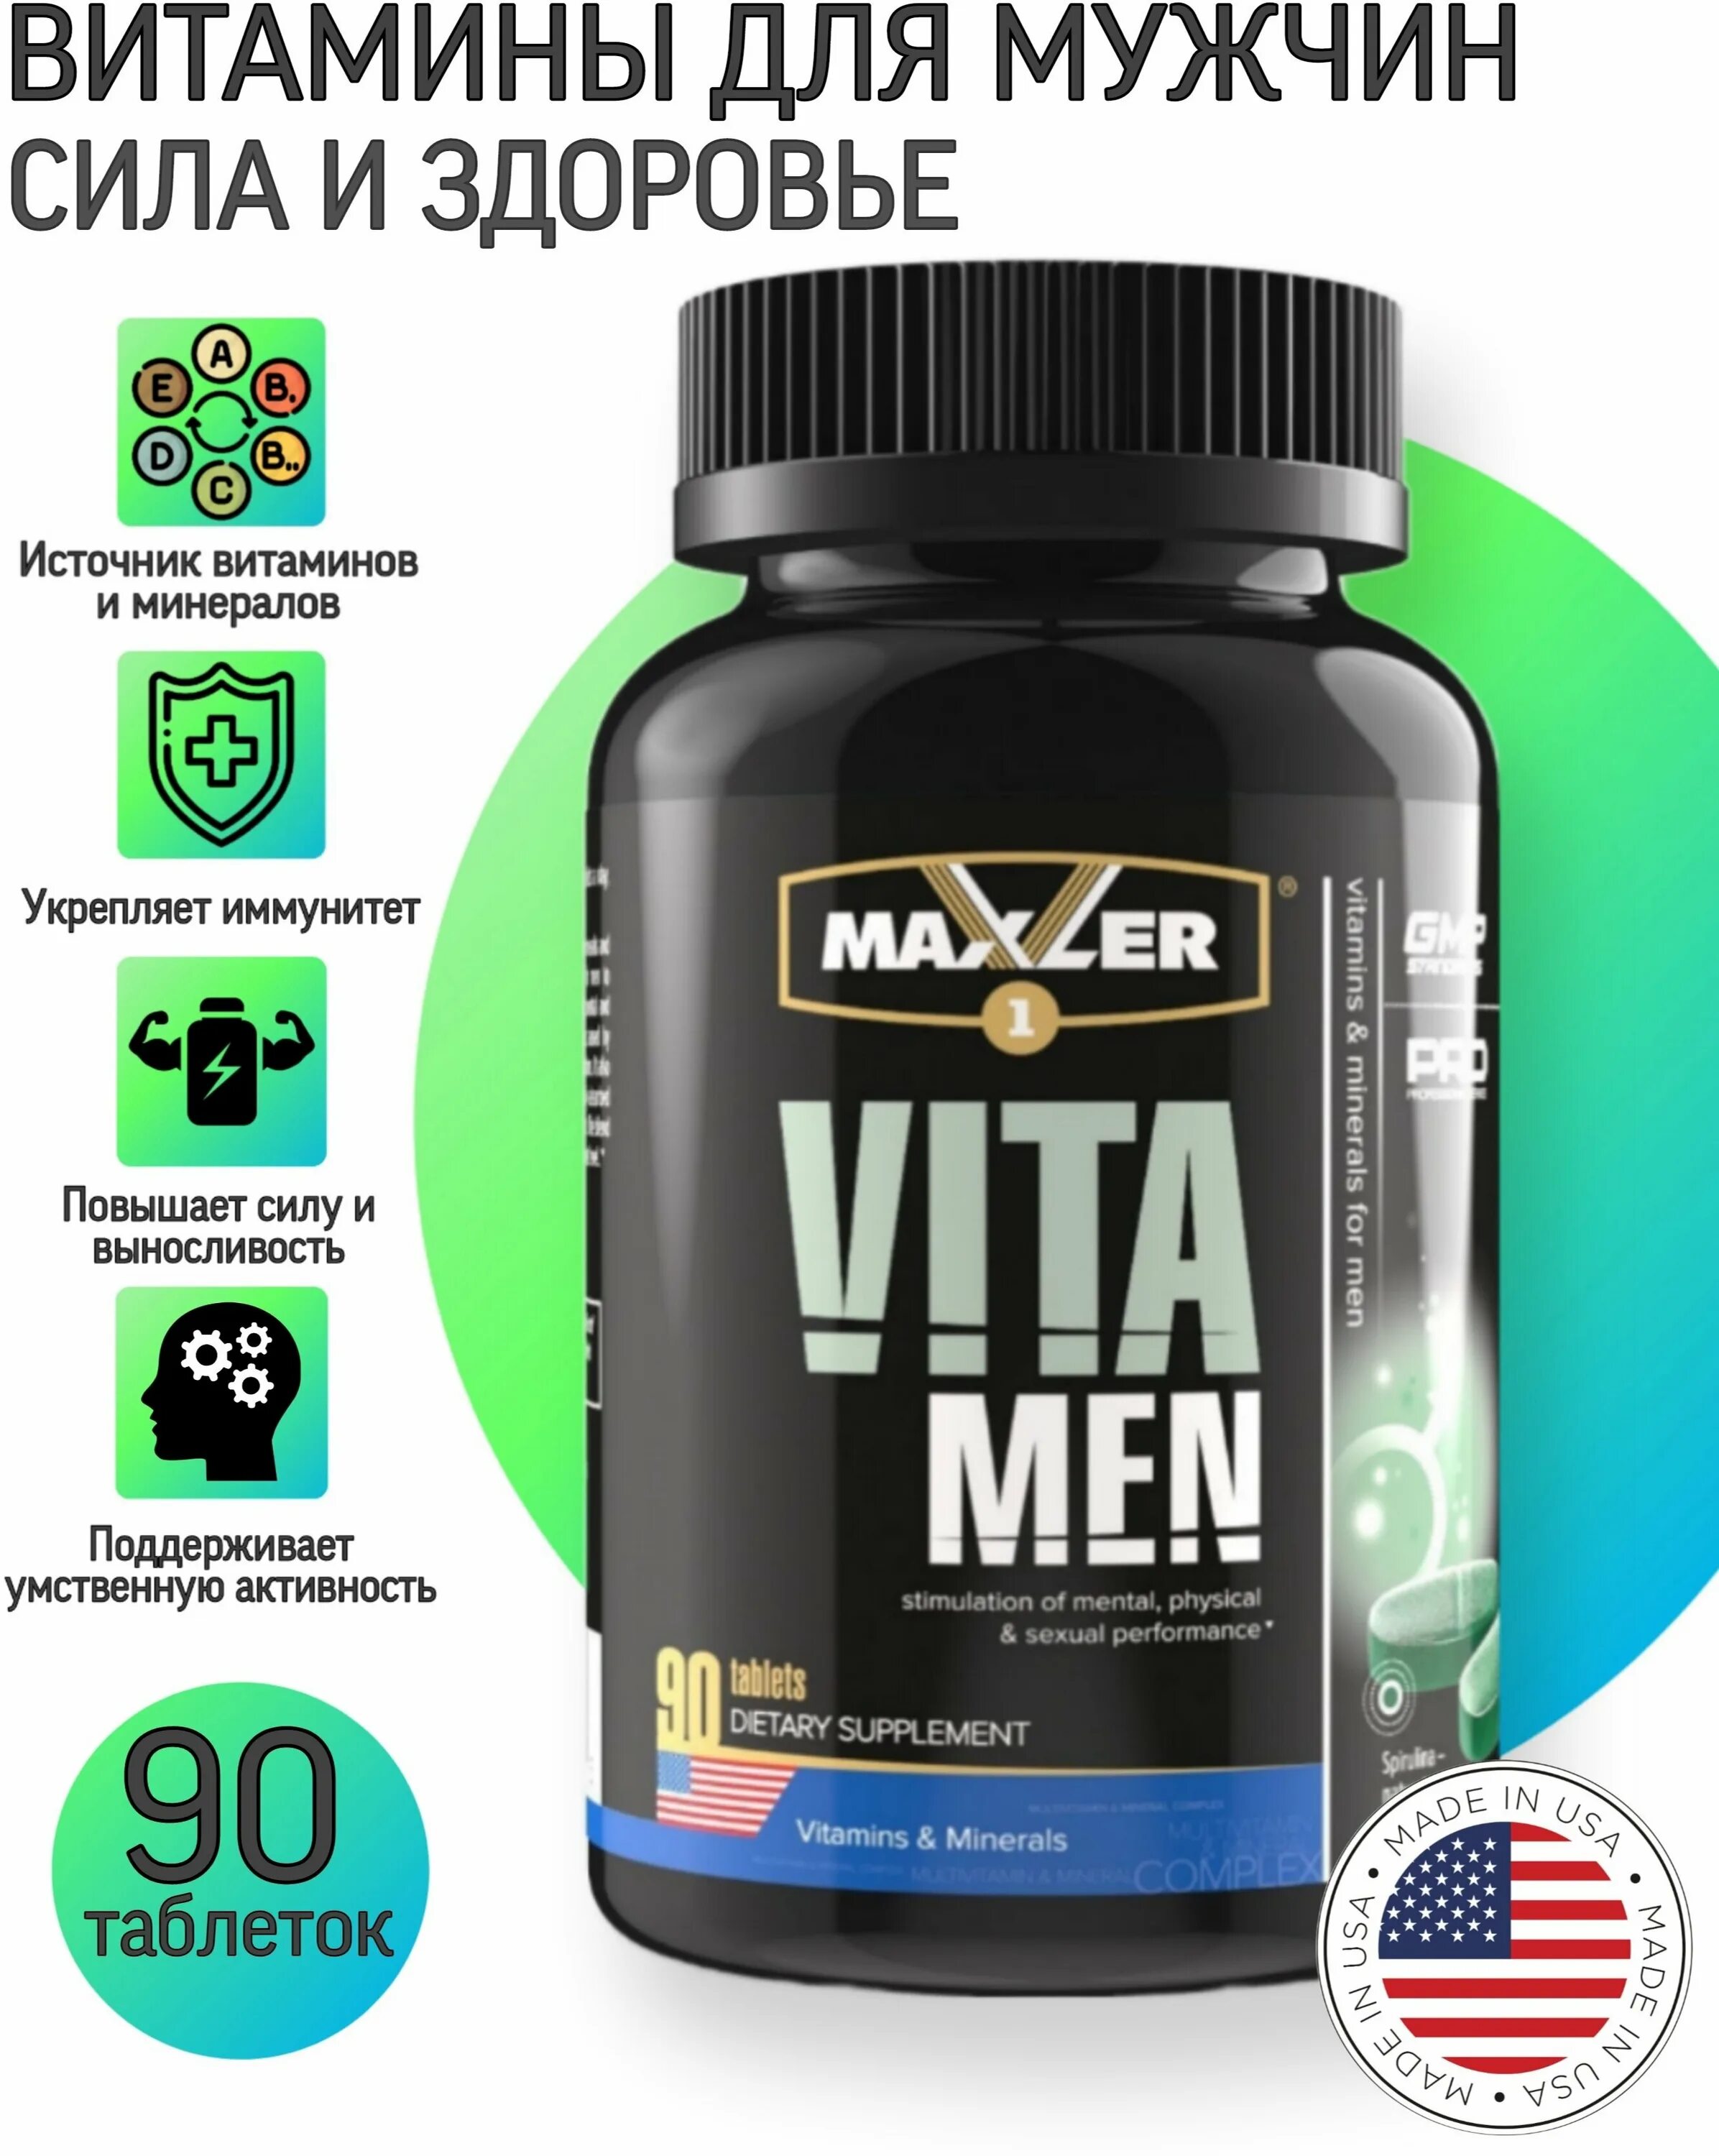 Купить спортивные витамины. Maxler VITAMEN 90 таб. Мужские витамины для мужчин. Витаминный комплекс для спортсменов мужчин.